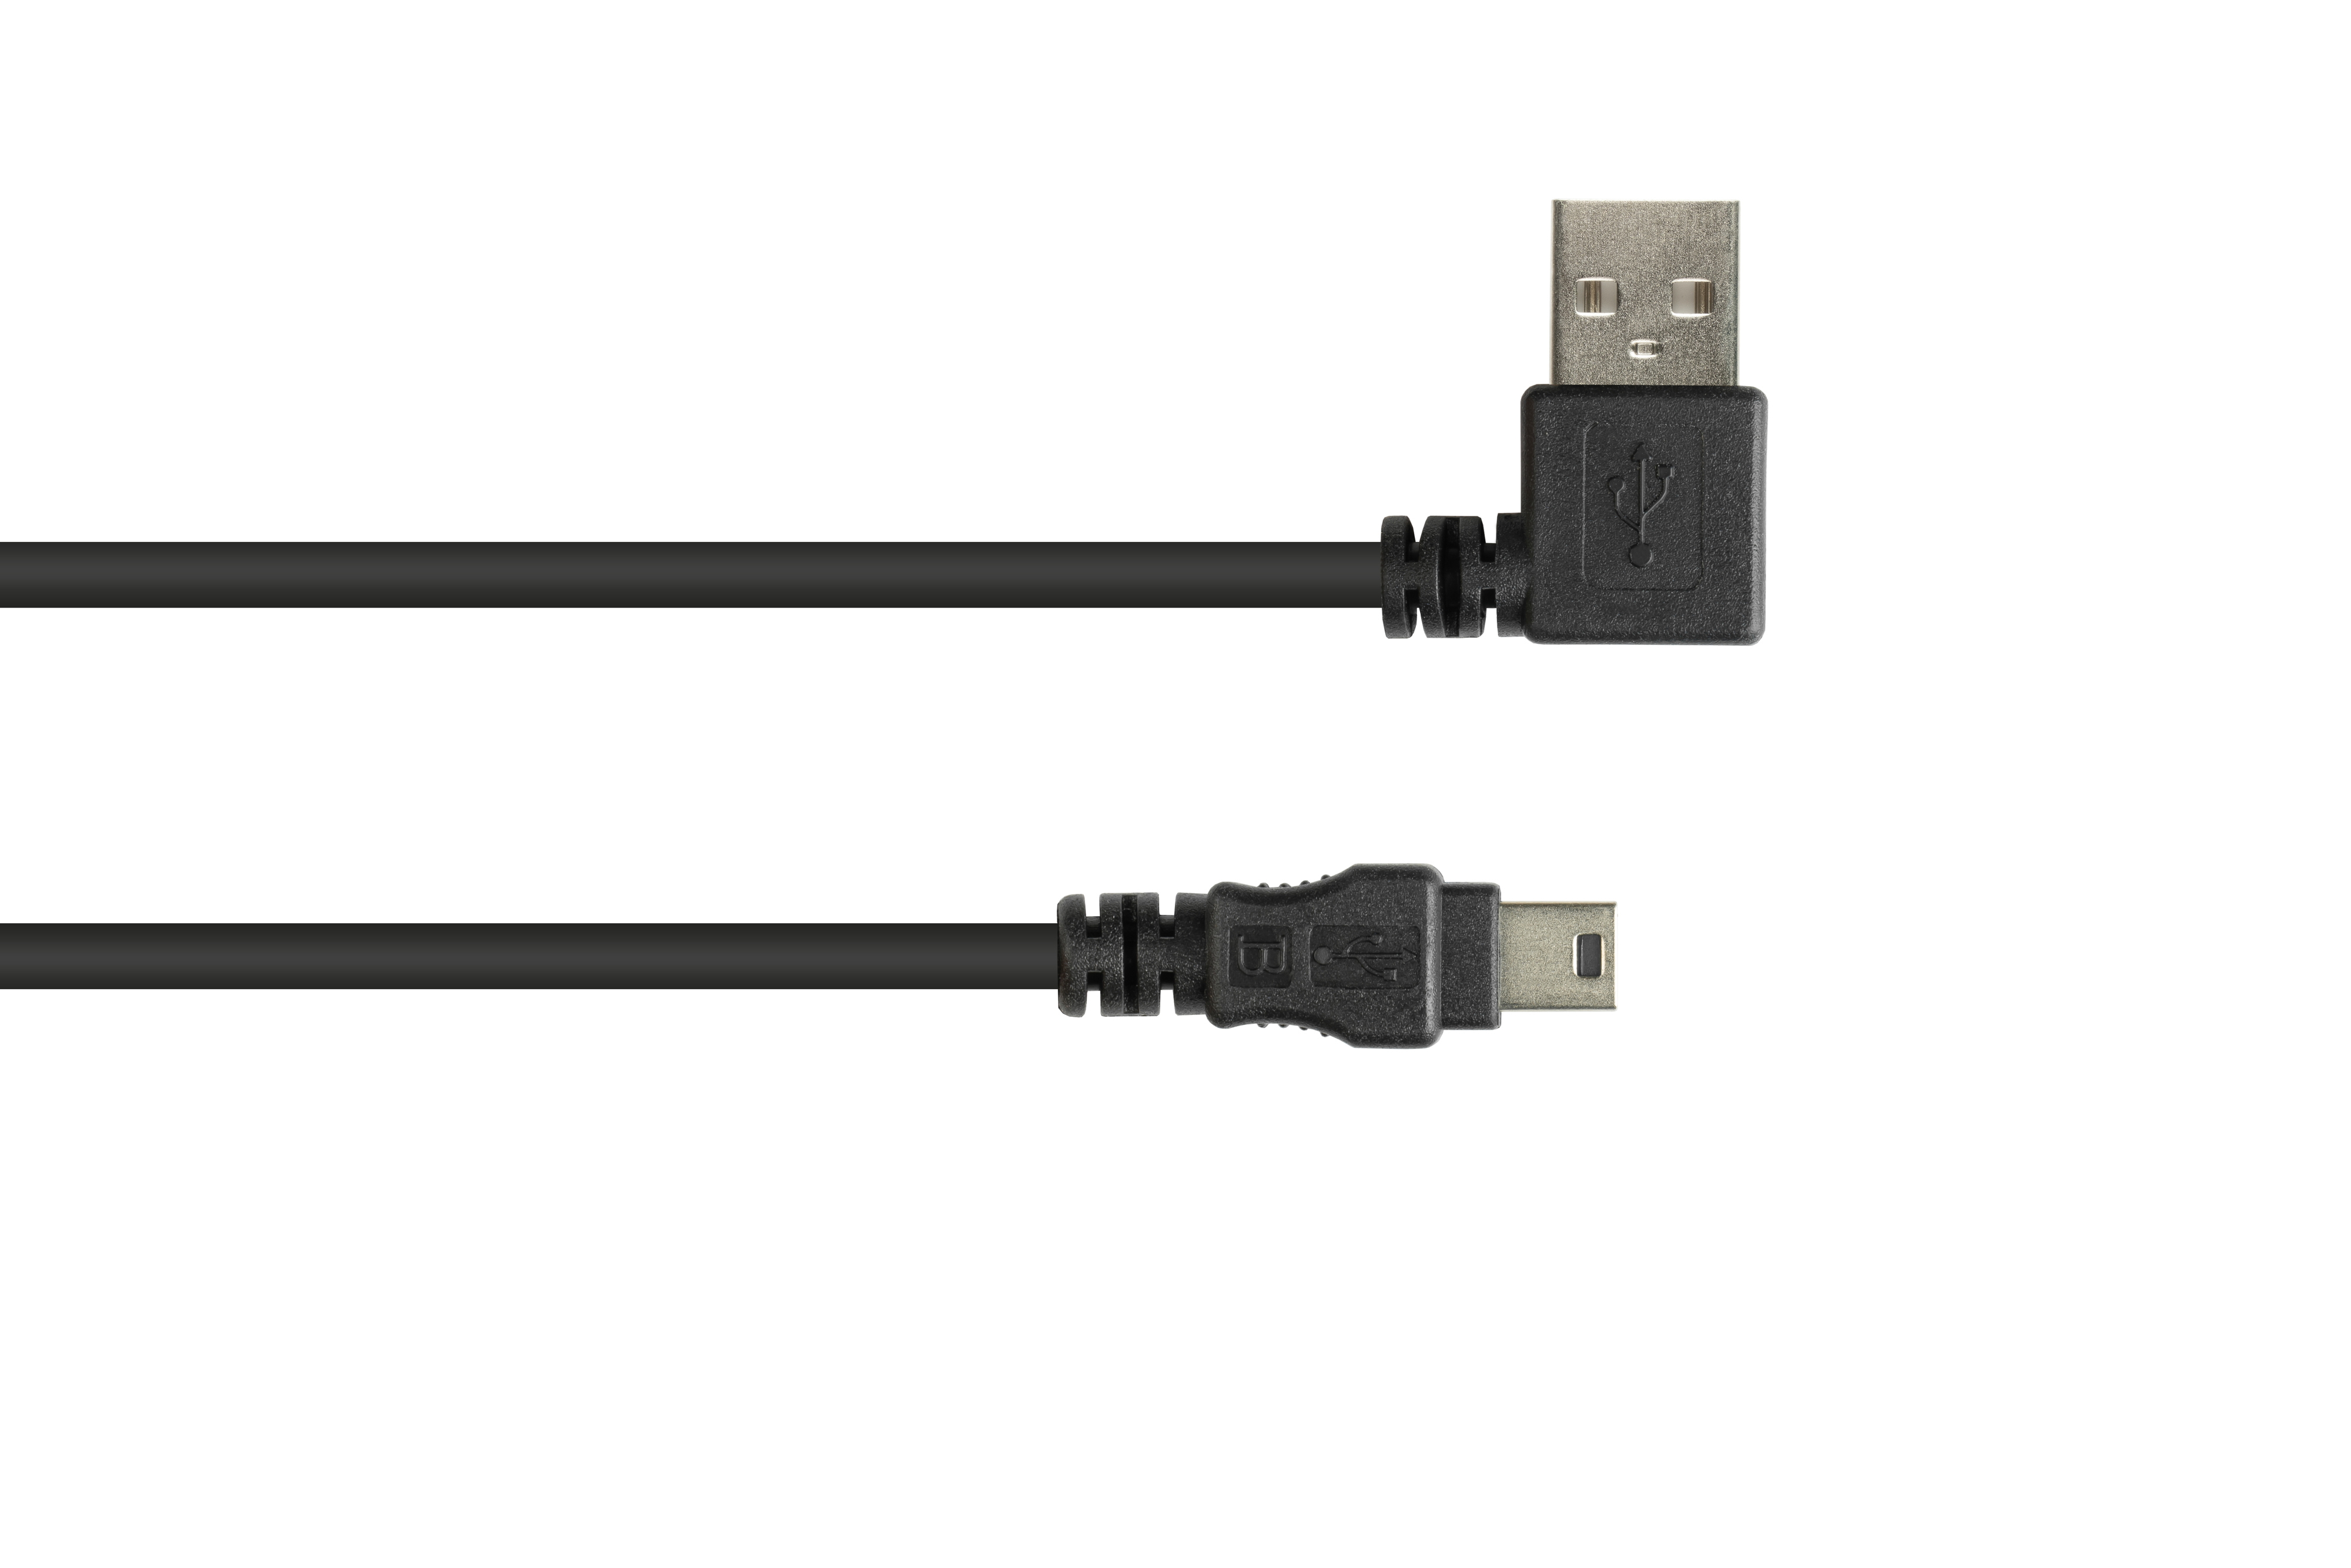 Stecker, CONNECTIONS an Stecker gewinkelt, 2.0 A schwarz USB B Anschlusskabel GOOD EASY Mini